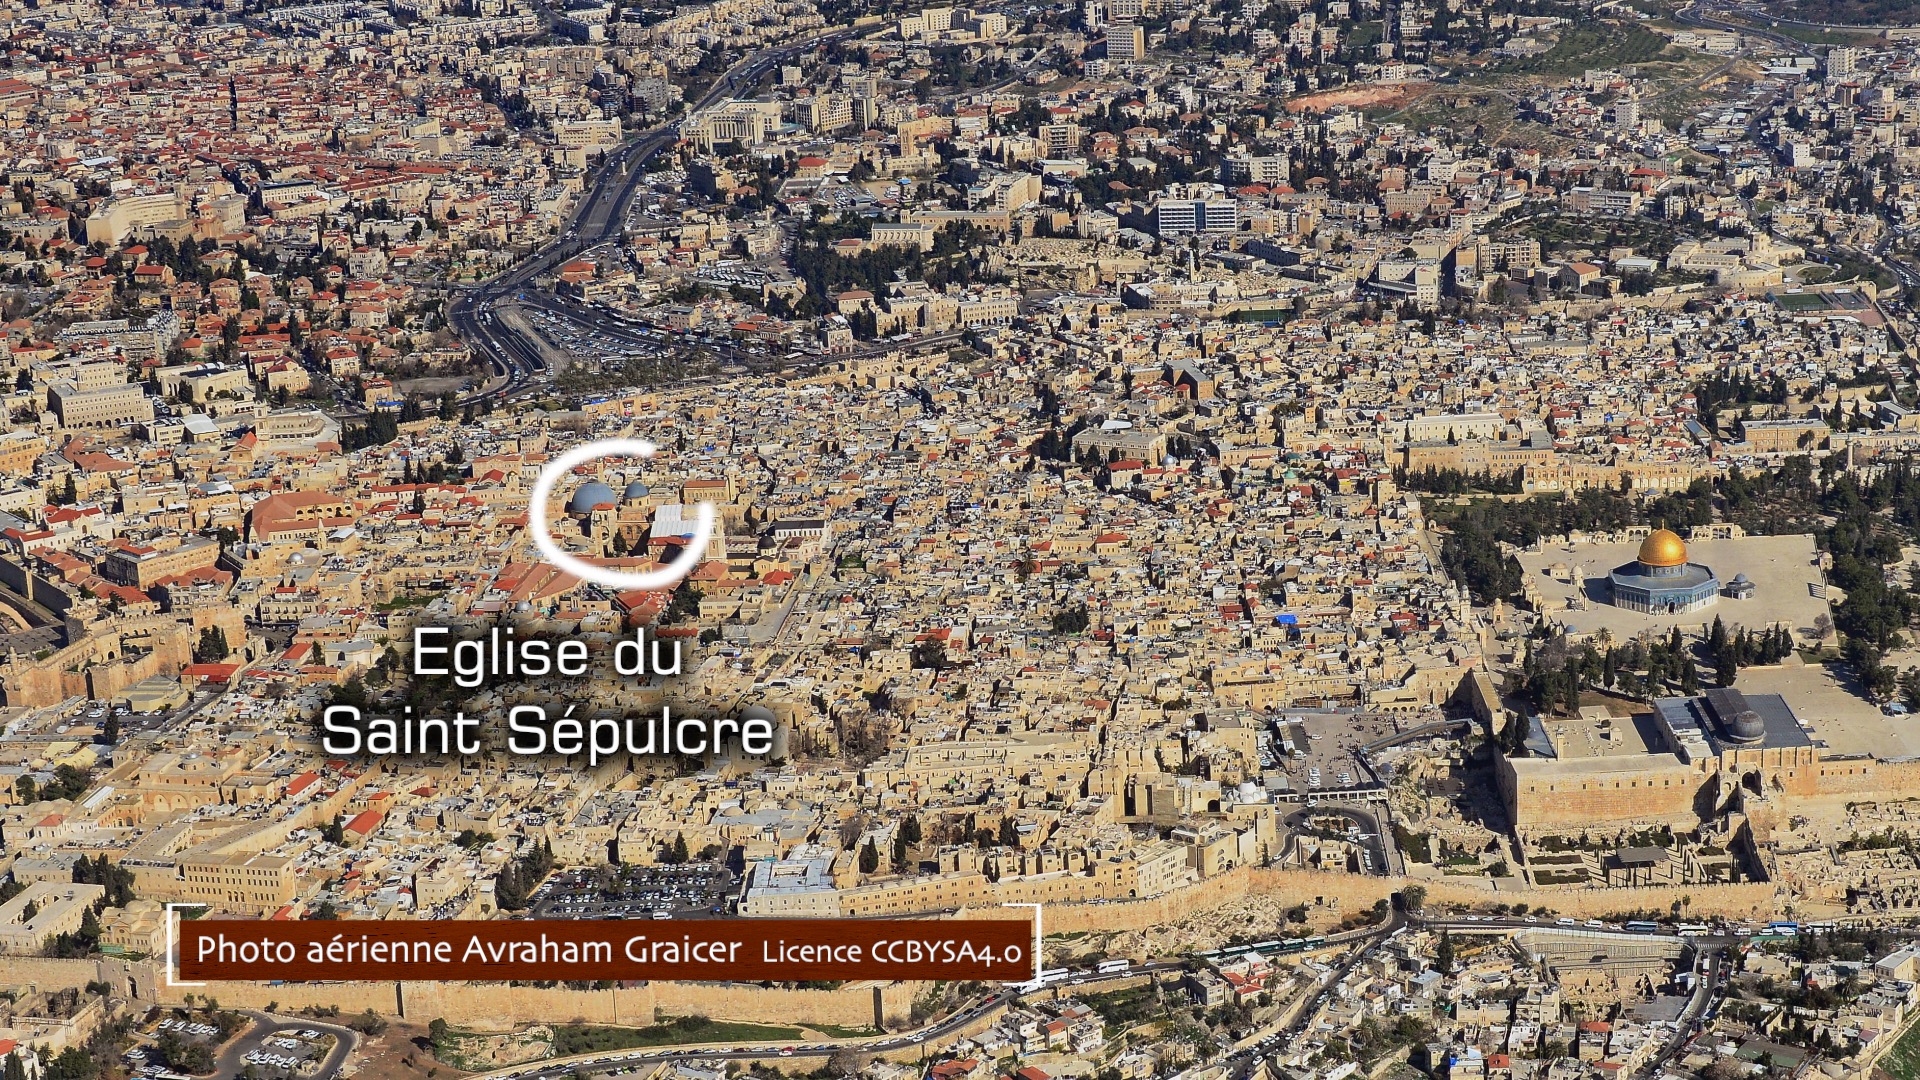 Photo aérienne de Jérusalem avec emplacement du St Sepulcre - Photo Avraham Graicer (ccbysa4.0)